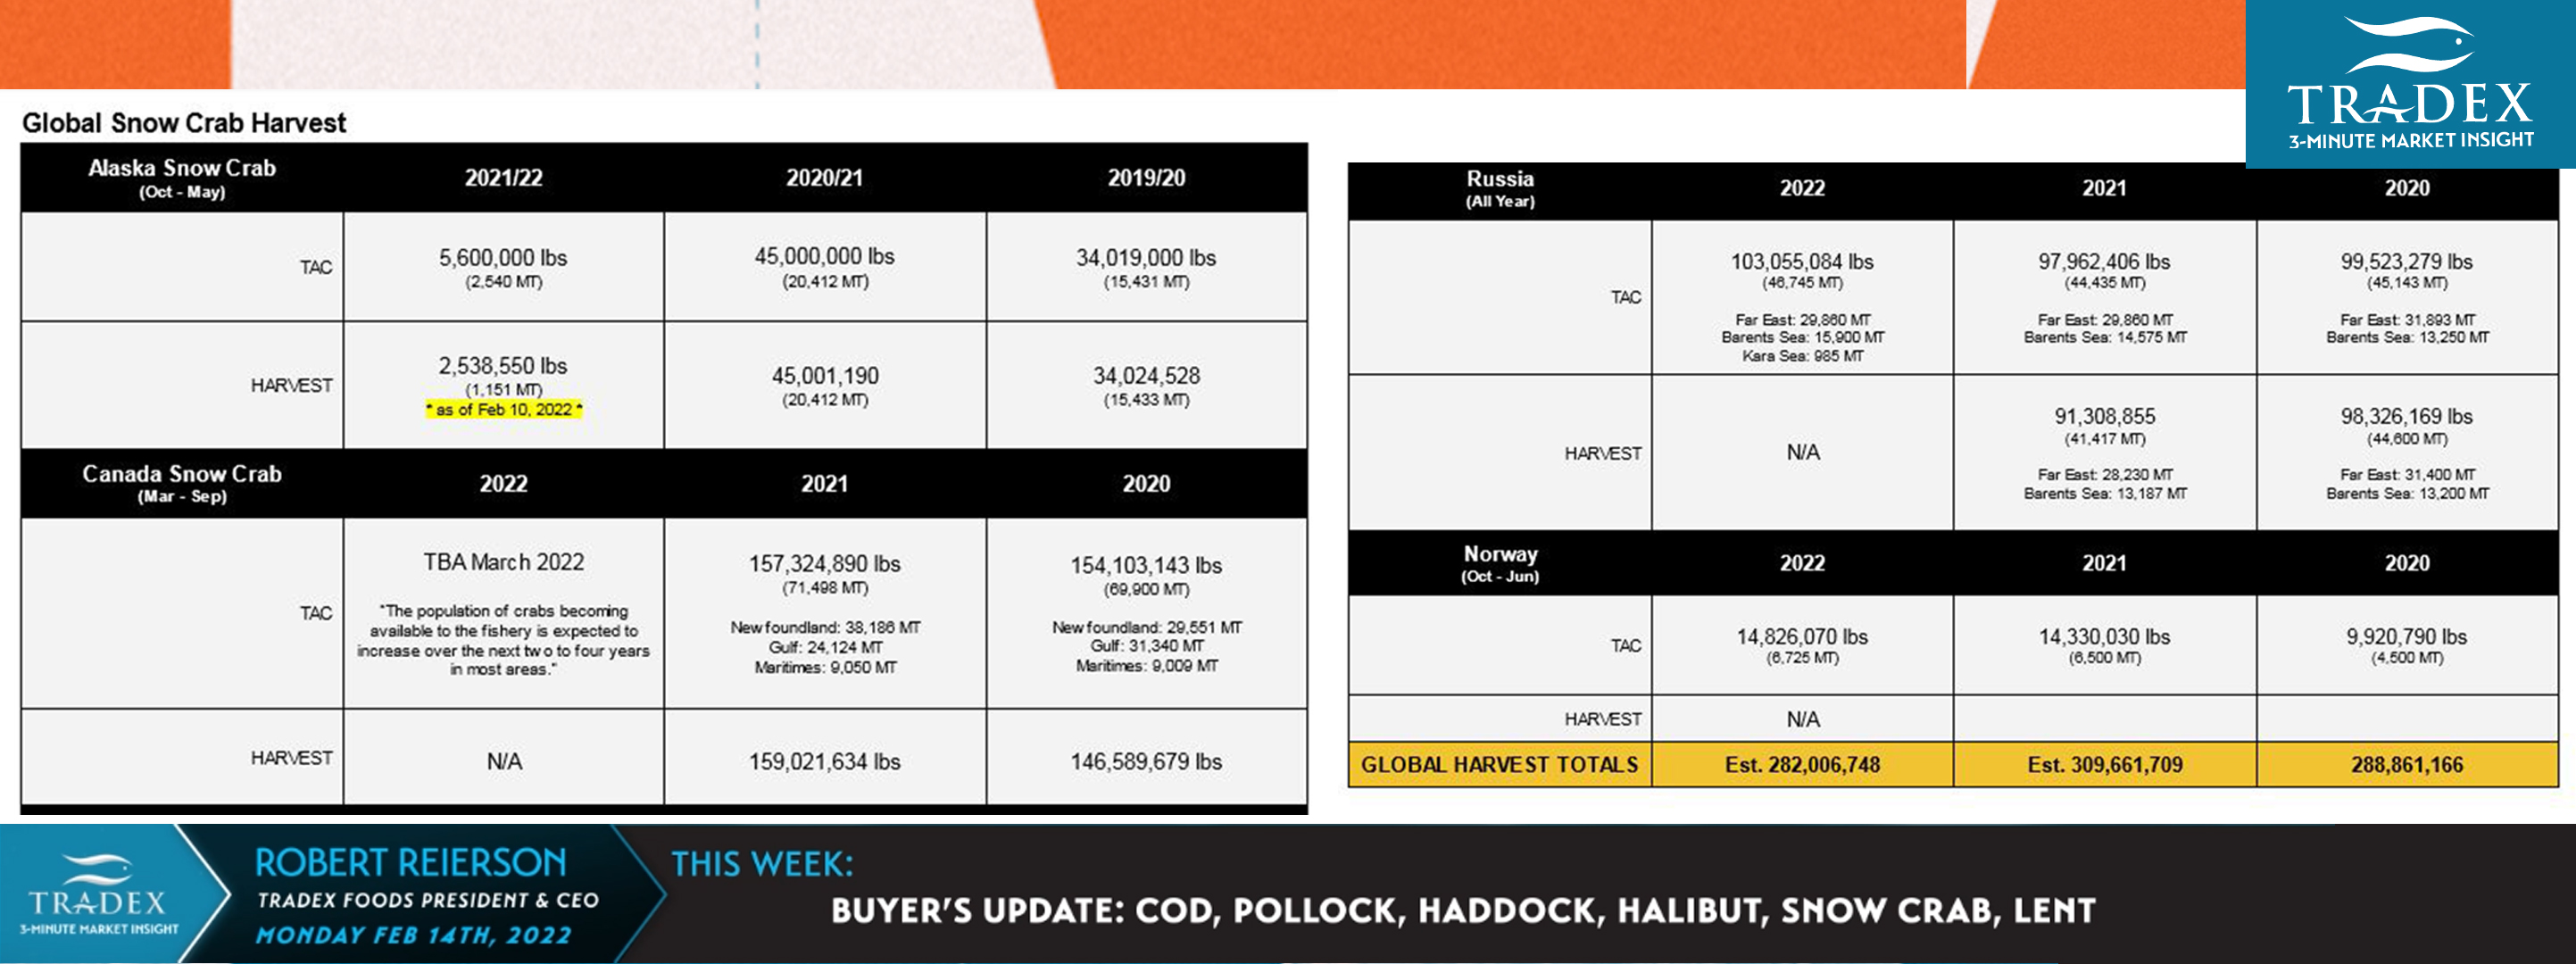 Buyer’s Update: Cod, Pollock, Haddock, Halibut, Snow Crab, Lent